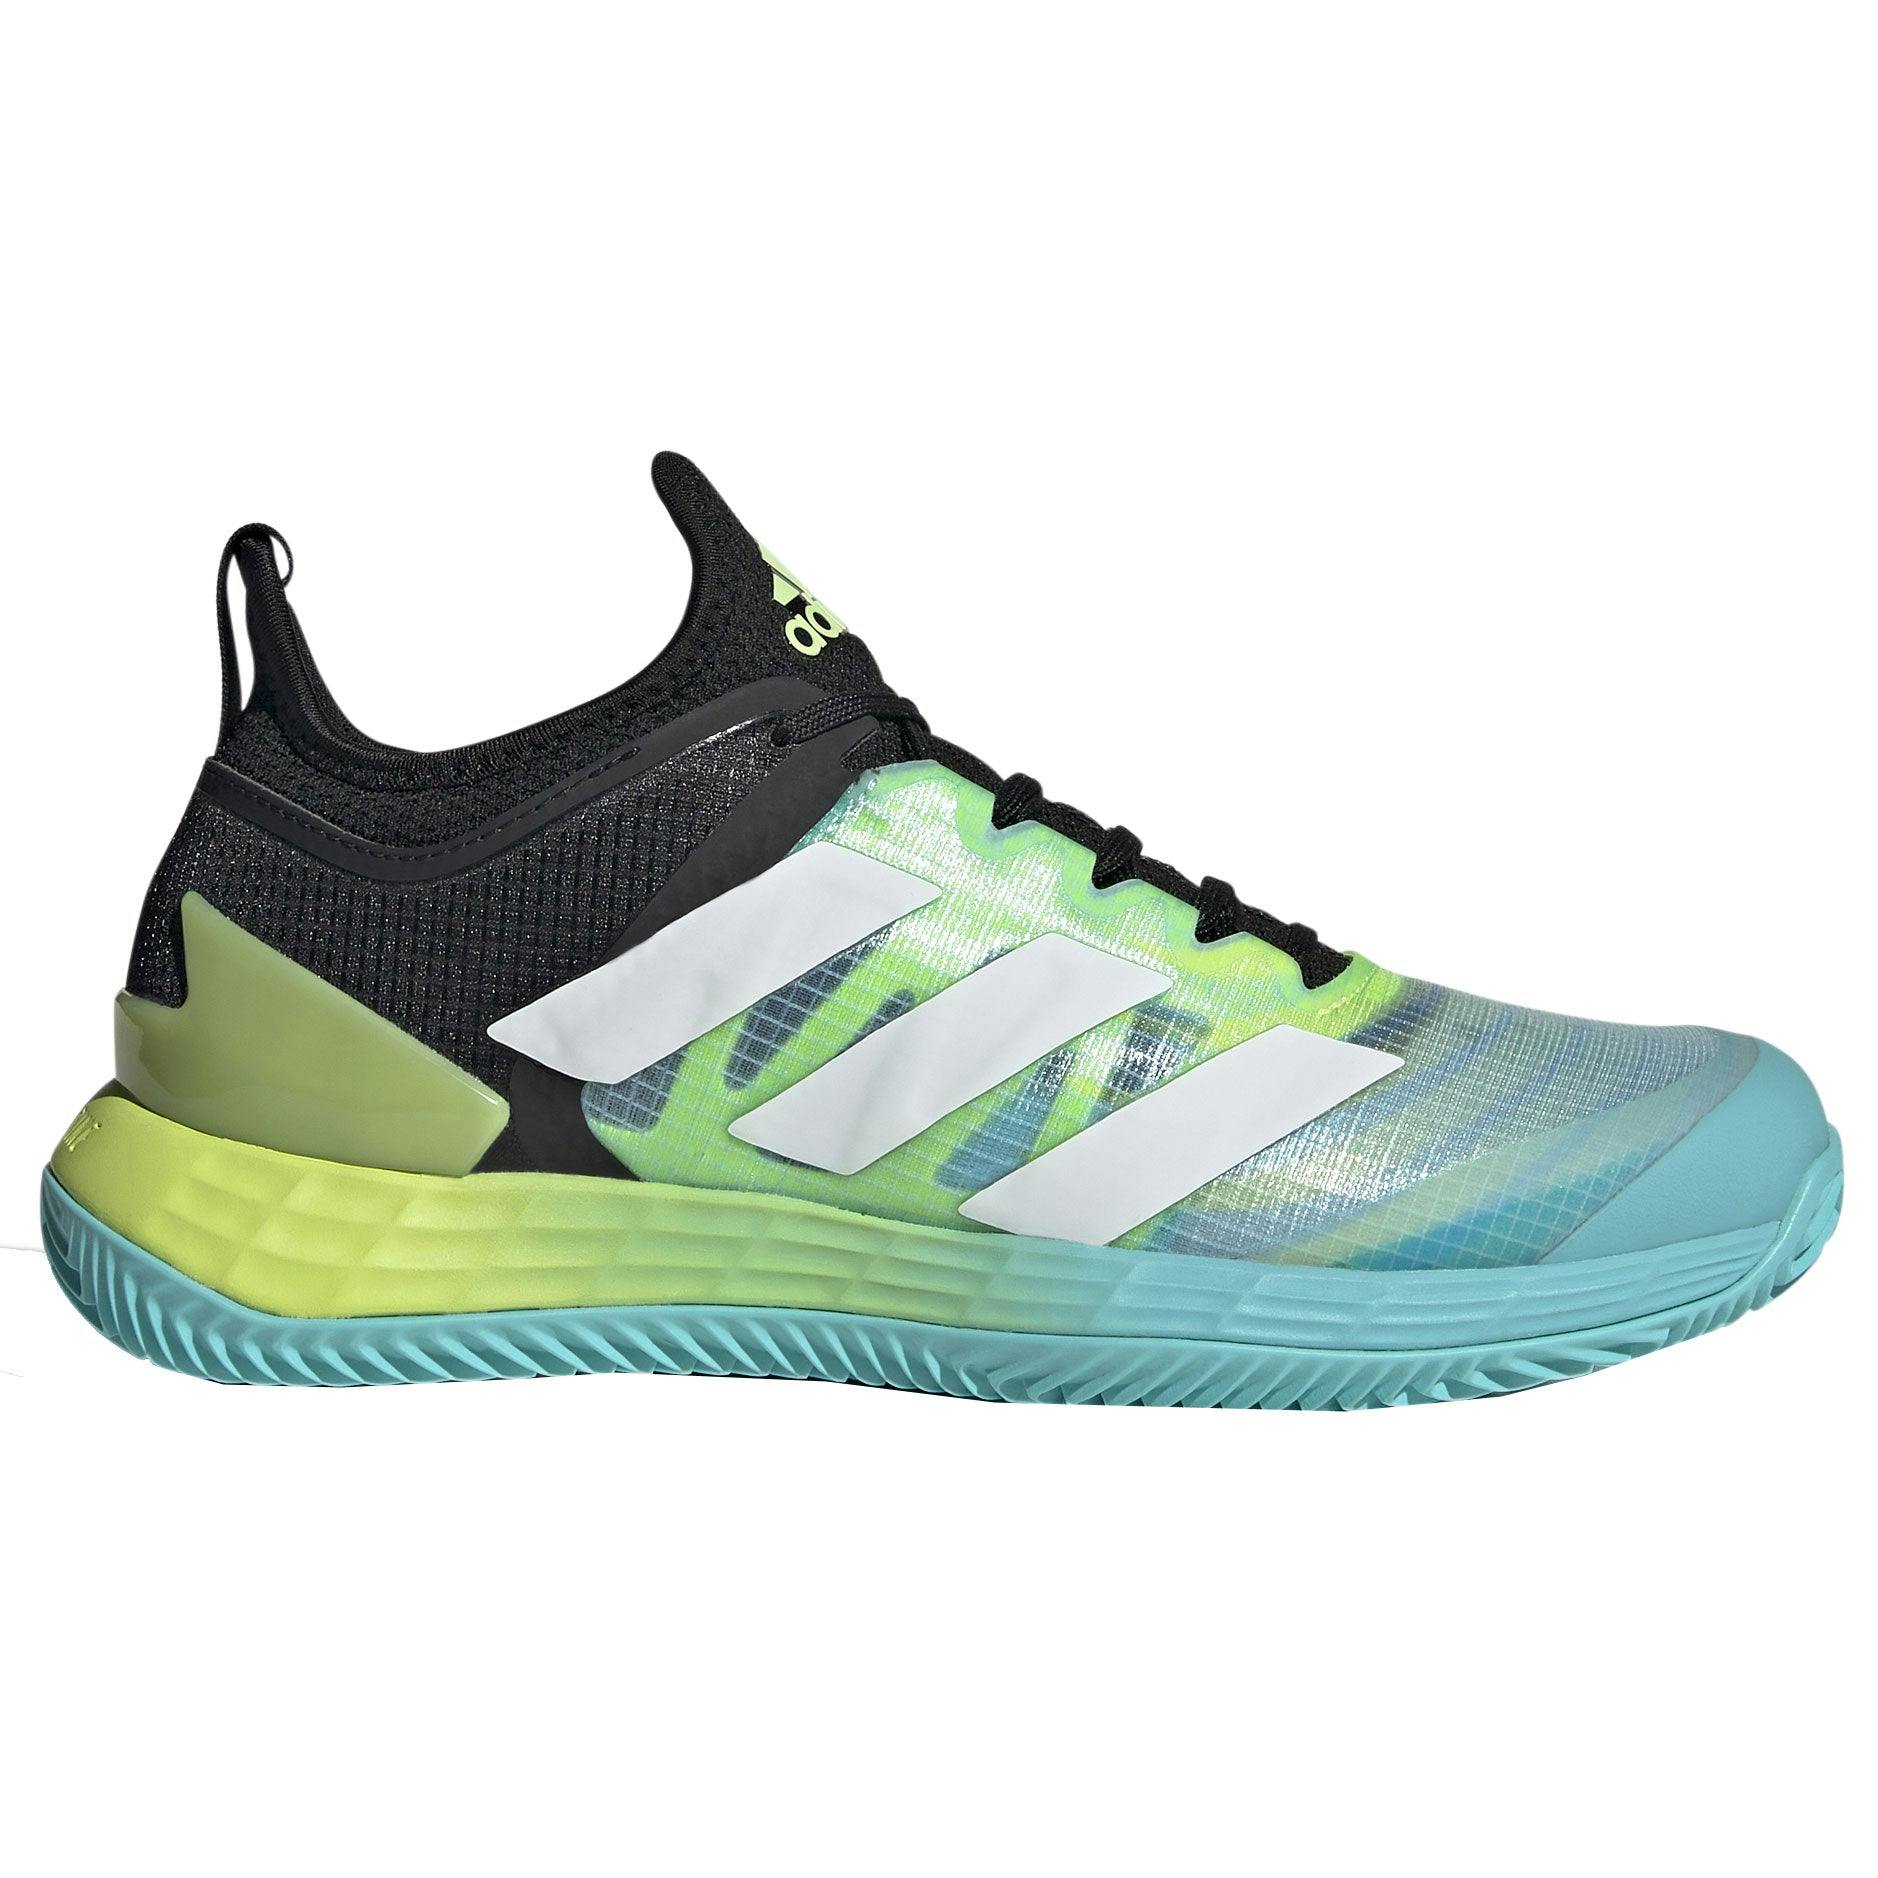 Adidas Adizero Ubersonic 4 Clay Black-Lime Womens Tennis Shoes - BLK/WHT/LIM 001 / B Medium / 8.0